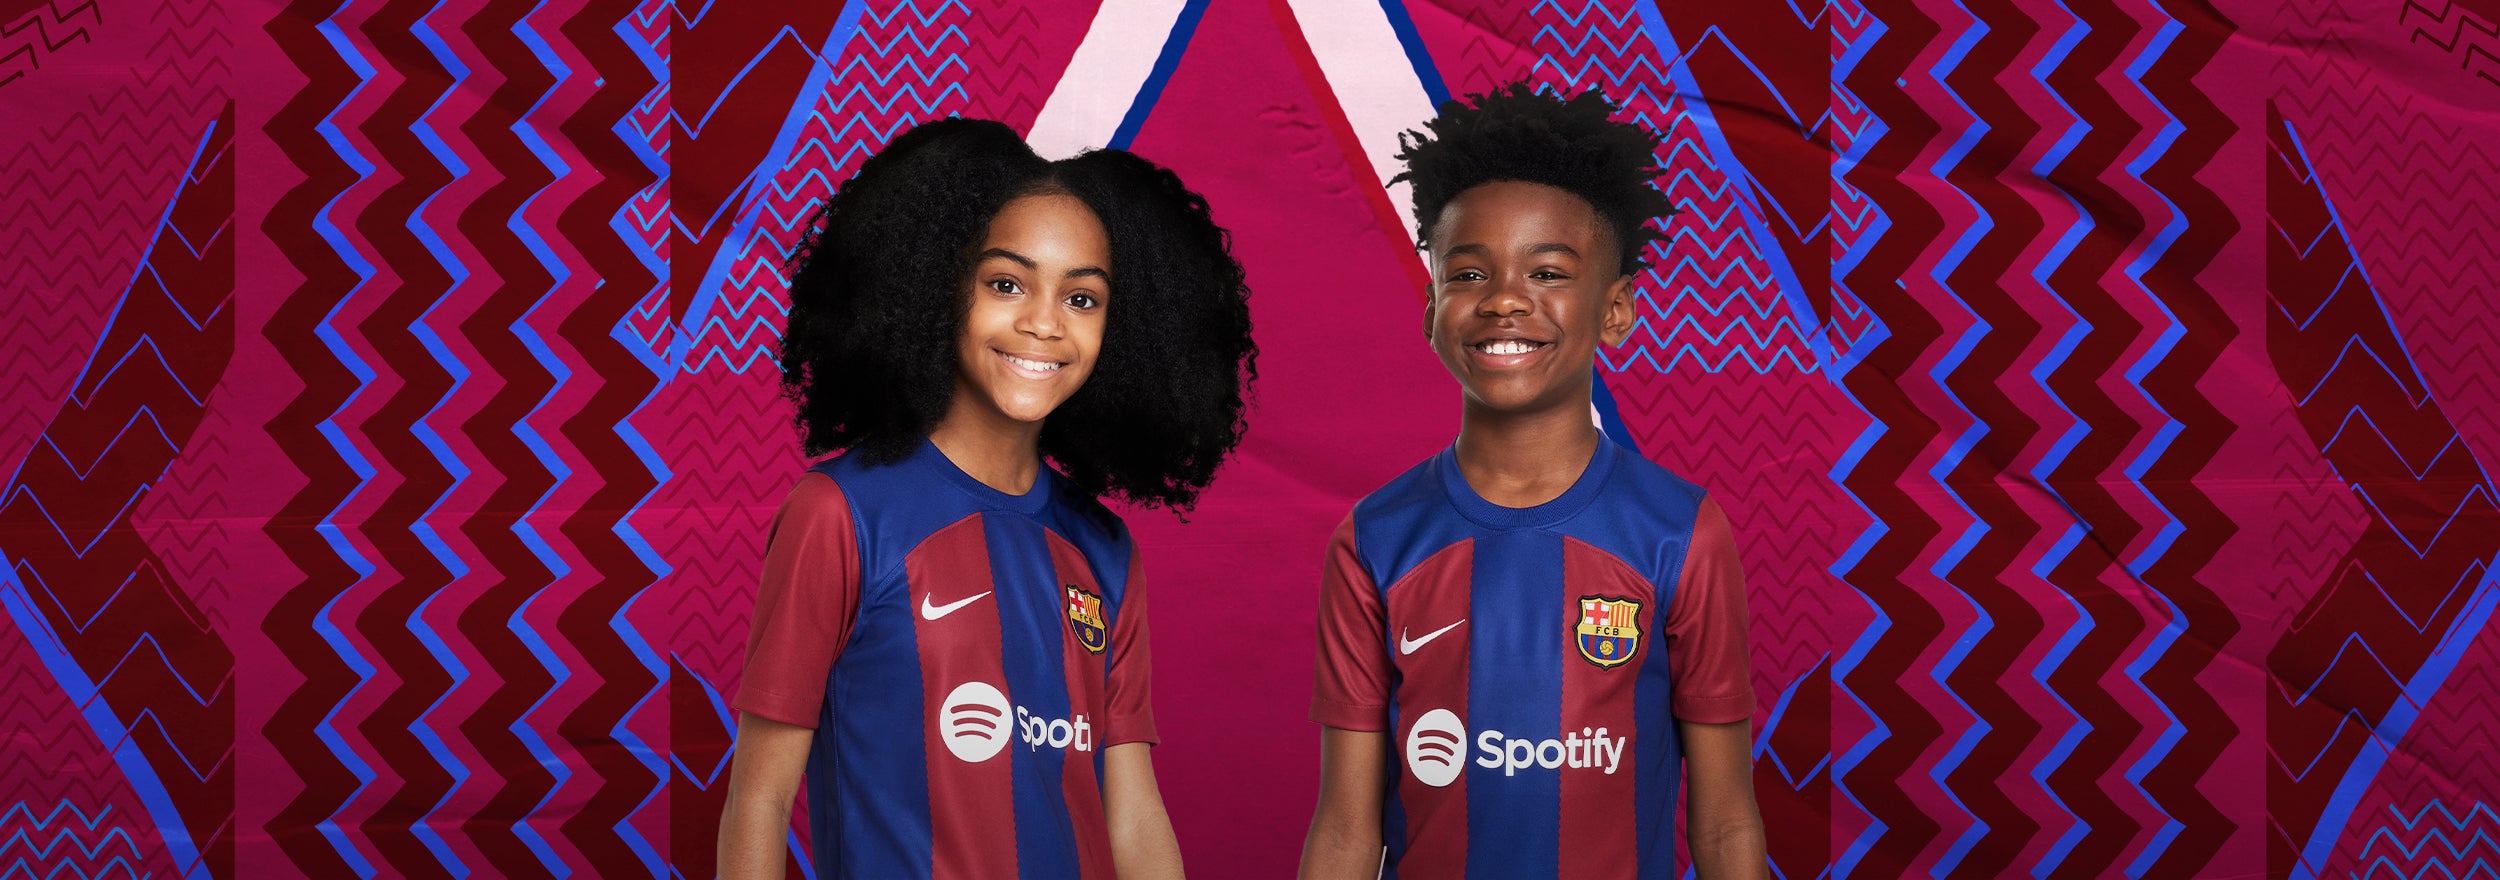 desagüe prestar Monumental Equipaciones para niños y niñas – Barça Official Store Spotify Camp Nou